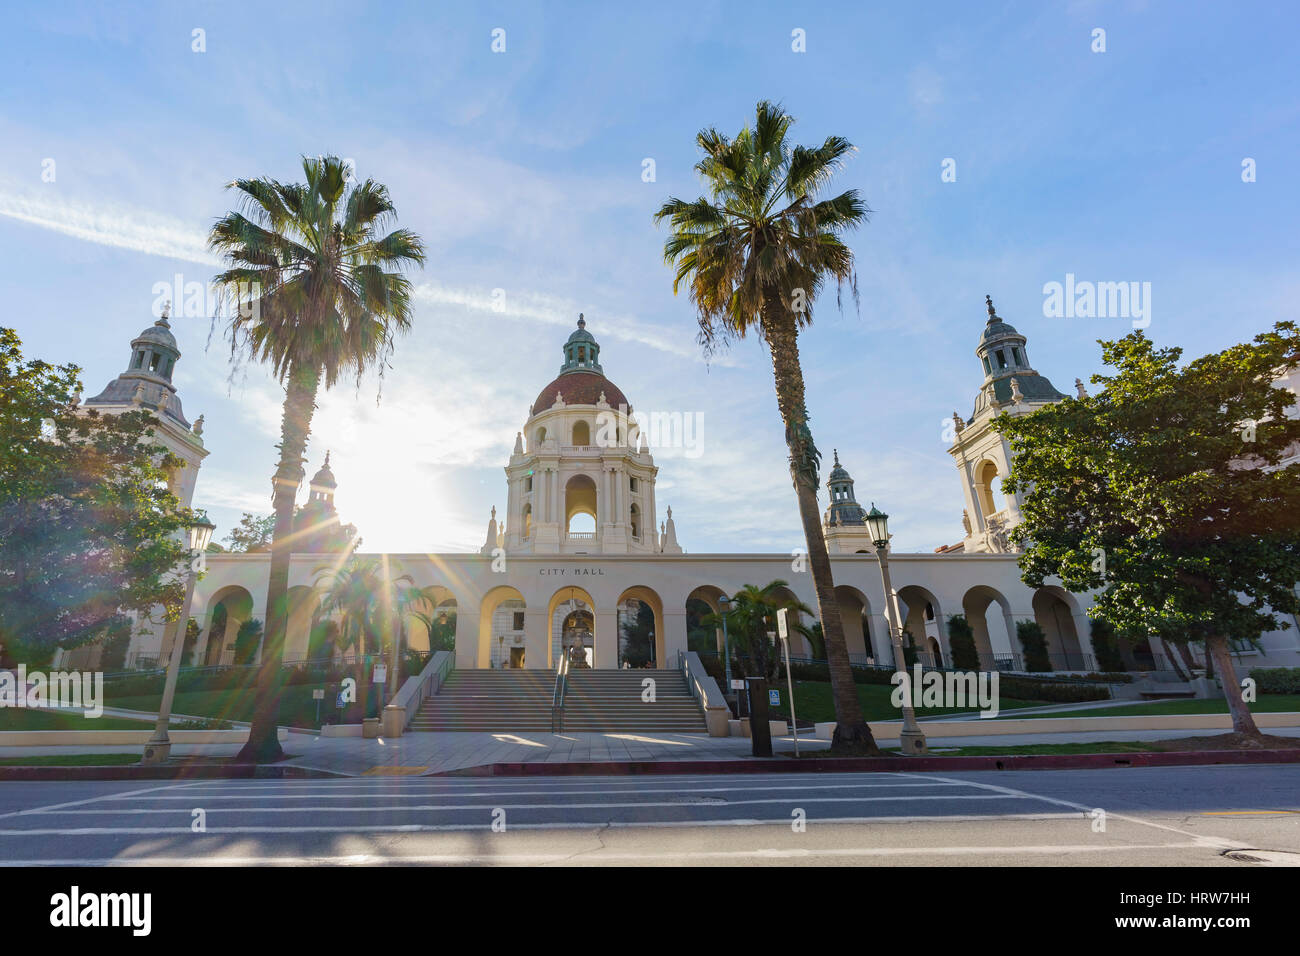 La hermosa tarde escena de Pasadena City Hall, Los Angeles, California Foto de stock